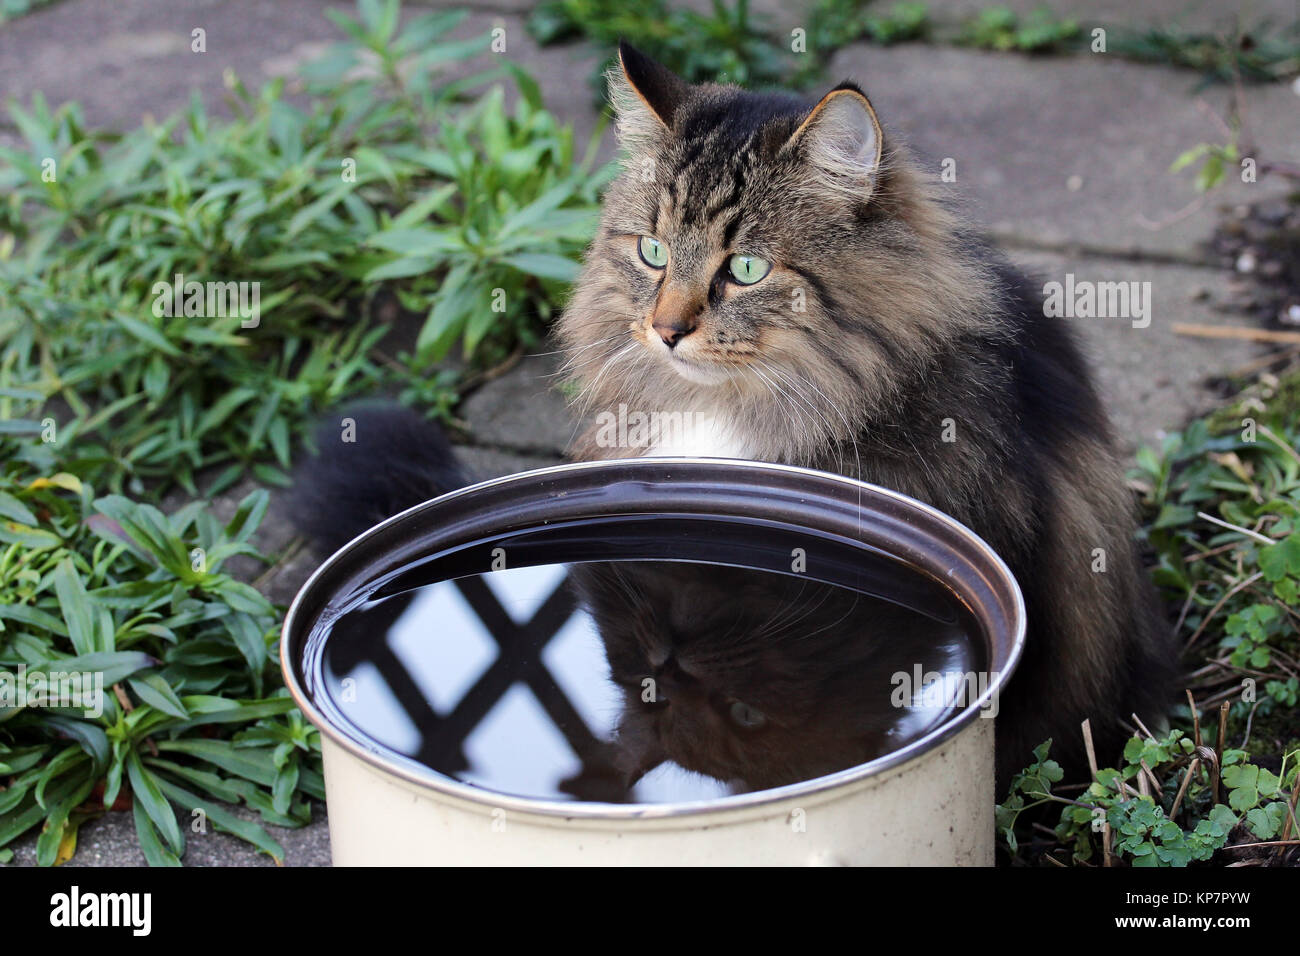 Gatti piace bere acqua piovana. un gatto si siede di fronte a una tazza di acqua piovana Foto Stock